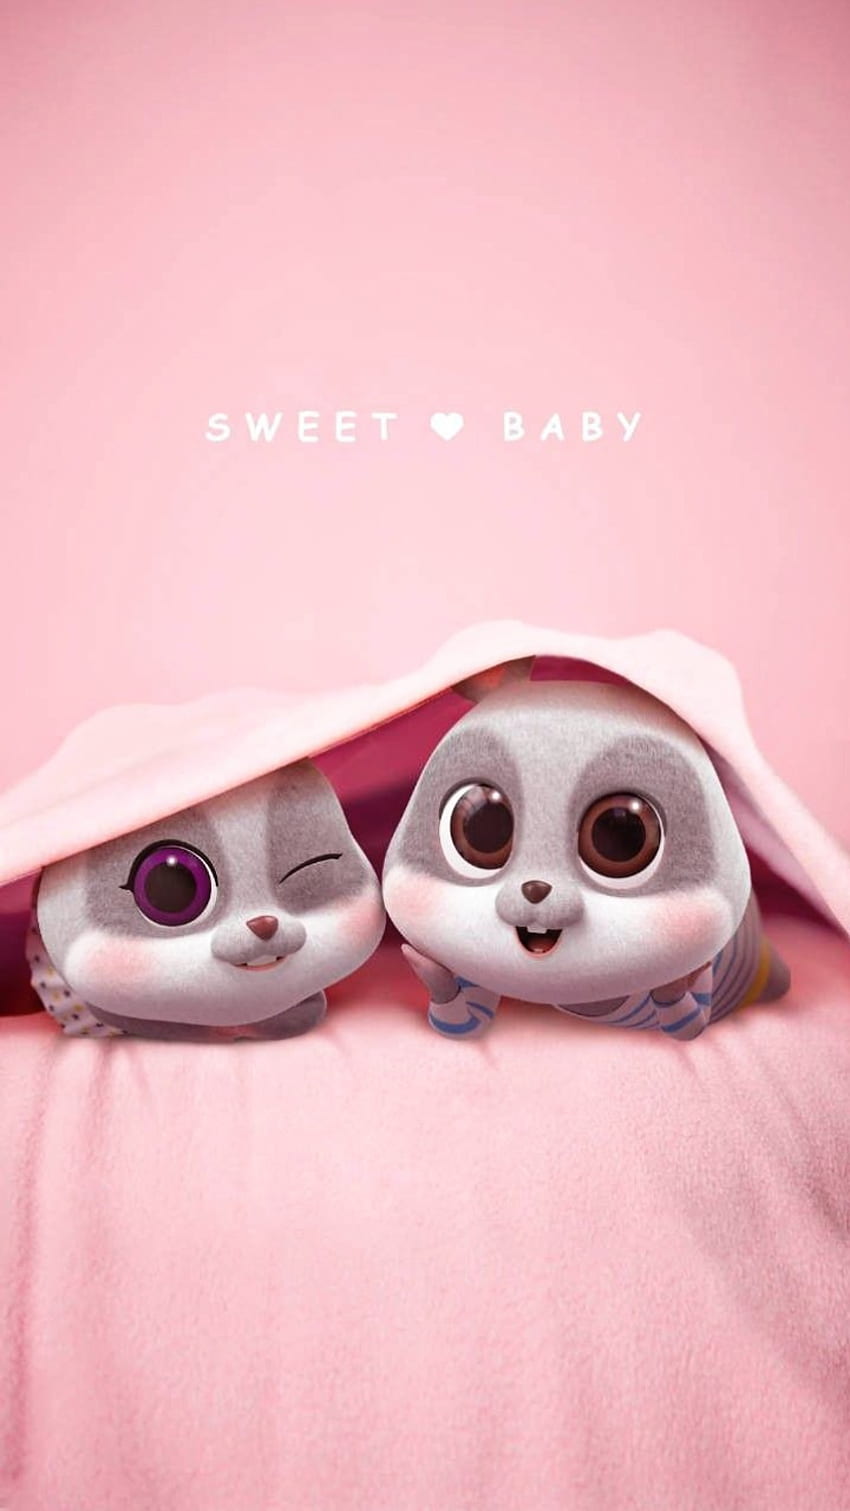 Bạn yêu thích động vật bé dễ thương? Hãy cập nhật điện thoại của bạn với những bức ảnh baby animal cute HD wallpapers, đem lại cảm giác thư giãn ngọt ngào và tình cảm cho bạn khi nhìn vào chúng.